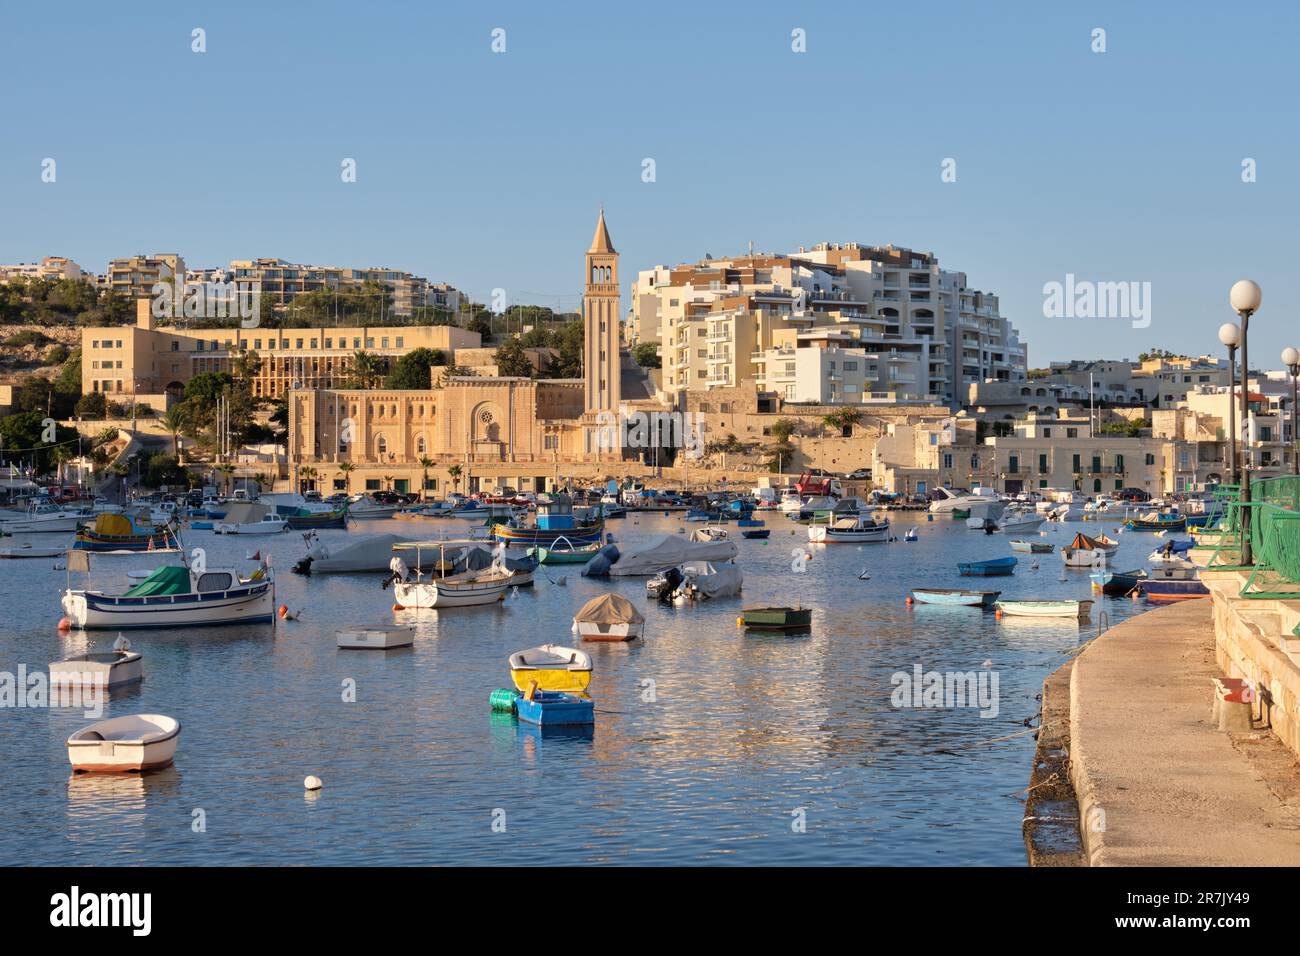 Ein natürlicher Hafen zwischen Zonqor Point und St. Thomas Bay - Marsaskala, Malta Stockfoto